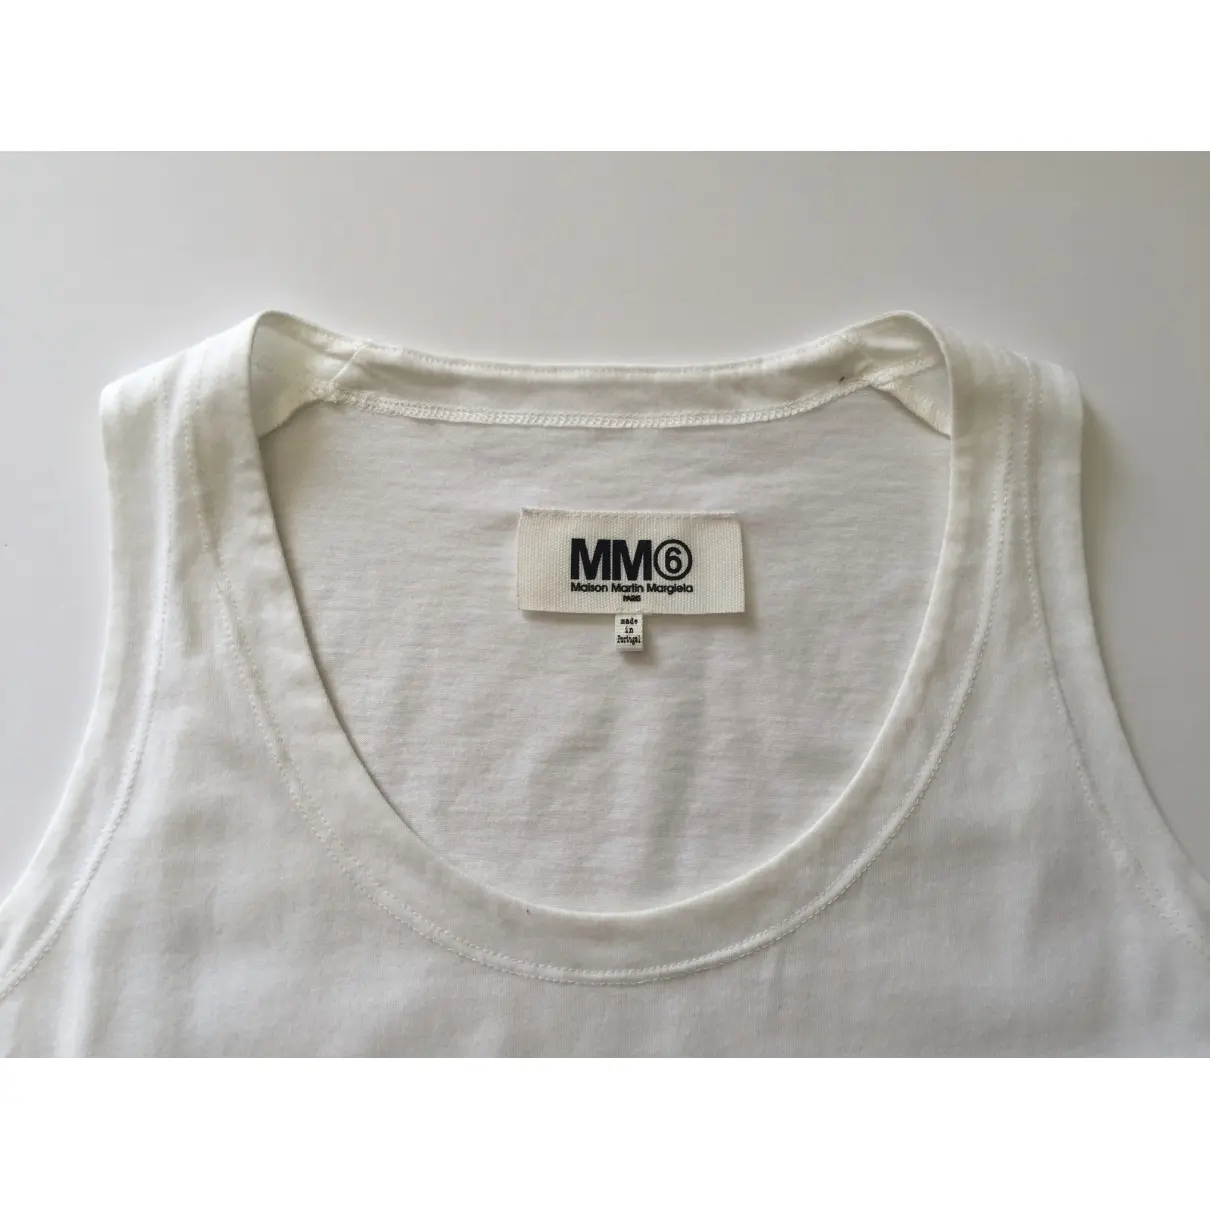 Buy MM6 Vest online